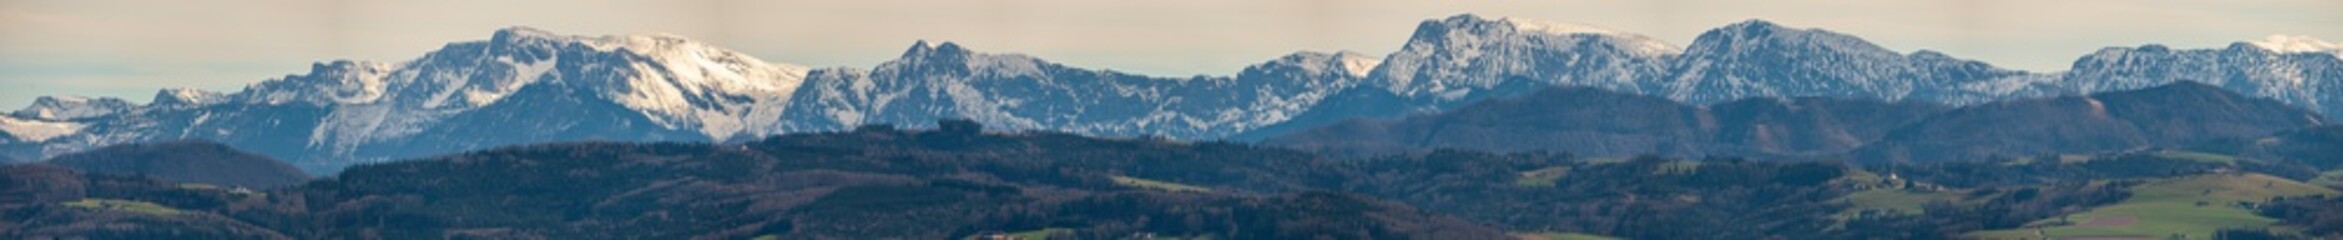 Oberösterreich Nationalpark Kalkalpen Dachsteingebirge Totes Gebirge Höllengebirge Panorama von Kremsmünster aus gesehen